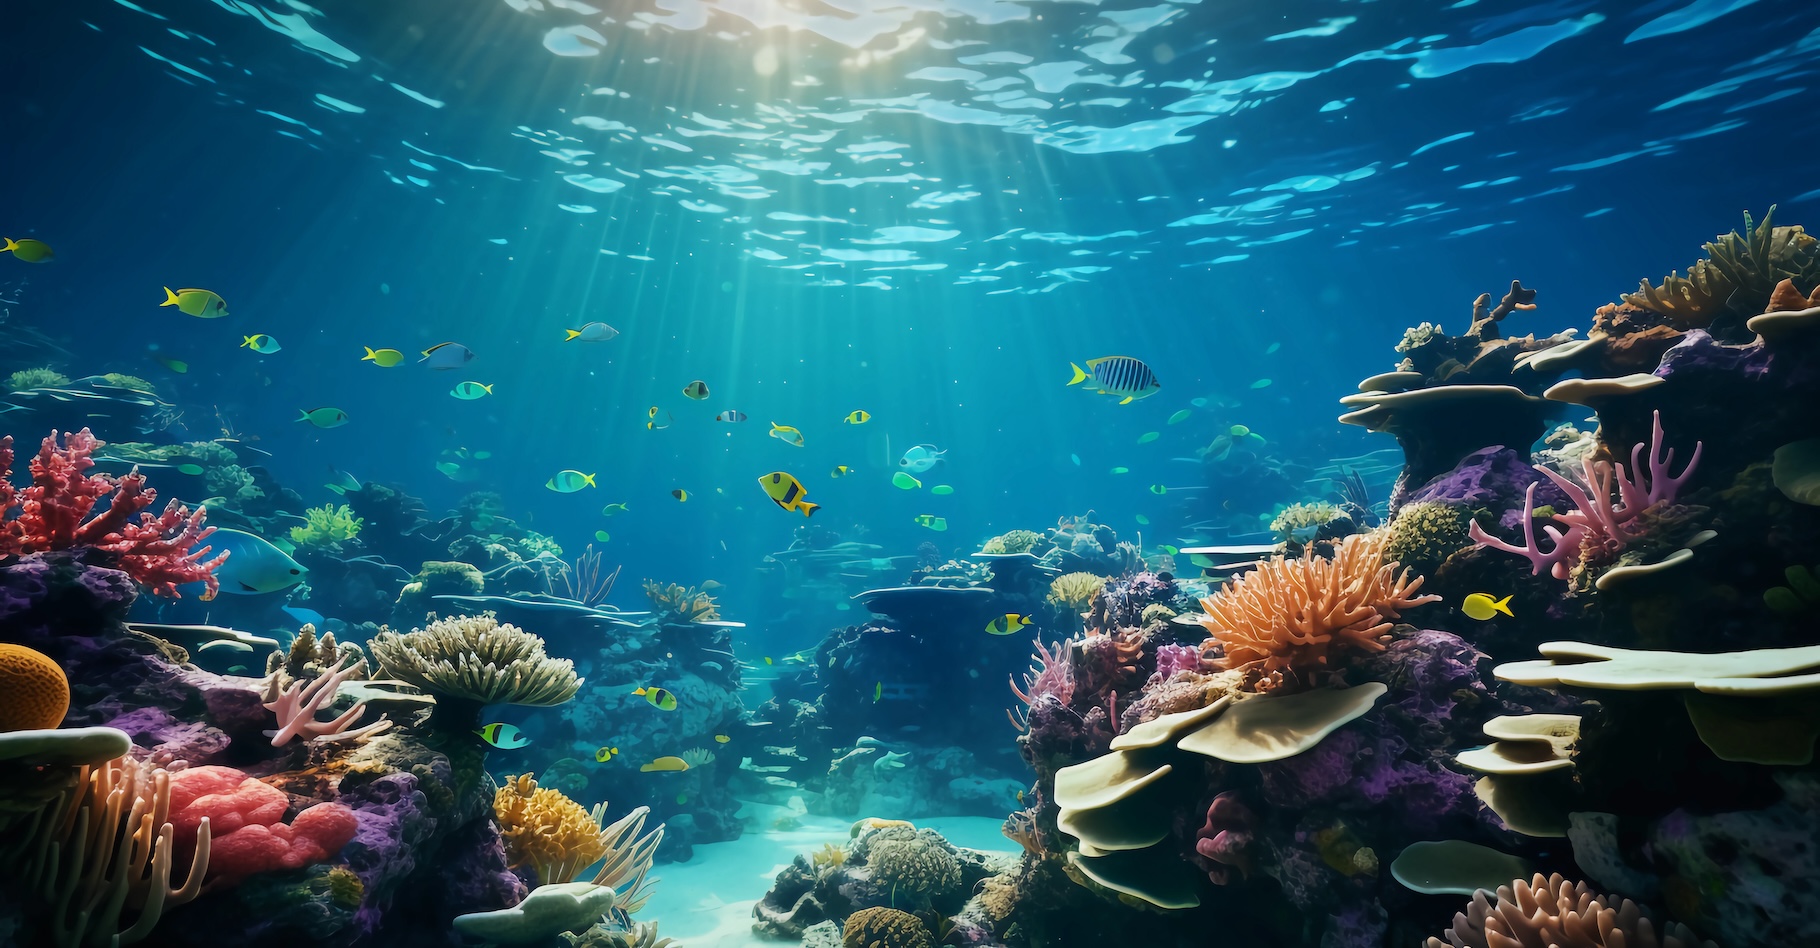 Les récifs coralliens sont des environnements riches qui souffrent du changement climatique. Des chercheurs de l’université de l’État de l’Arizona (États-Unis) les citent en exemple de leurs travaux sur les points de basculement. © ginstudio, Adobe Stock